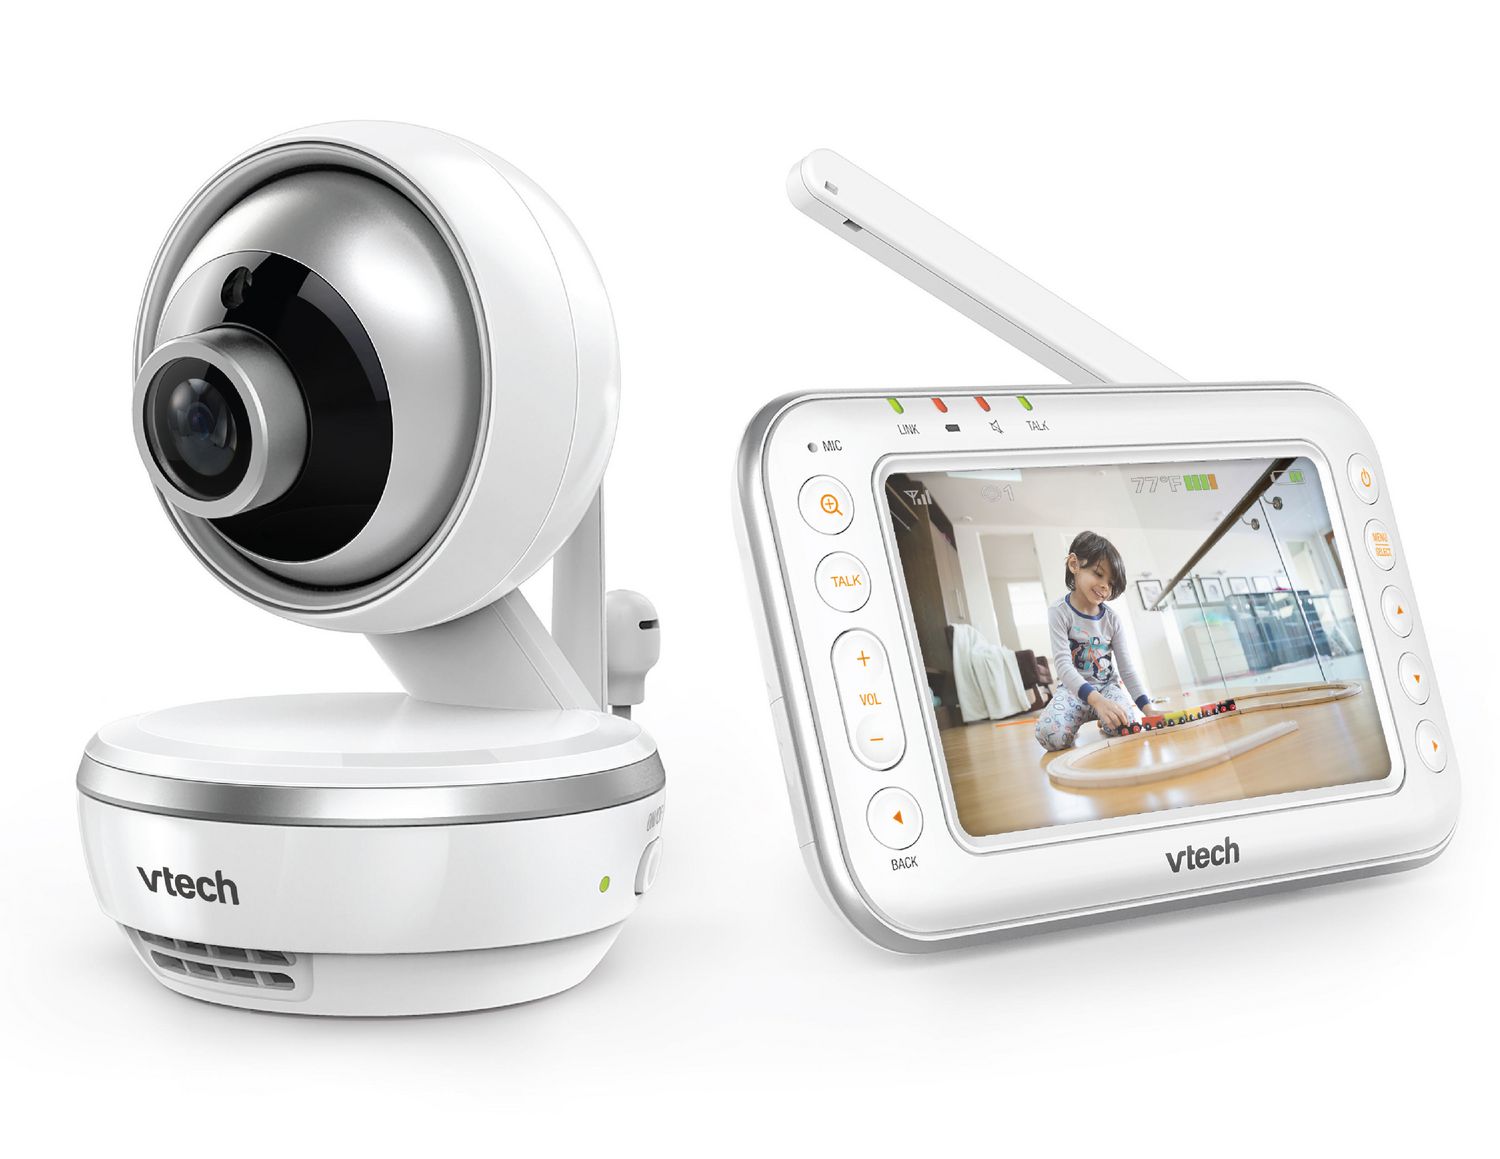 Vtech VM4261 4.3" Digital Video Baby Monitor with Pan & Tilt Camera